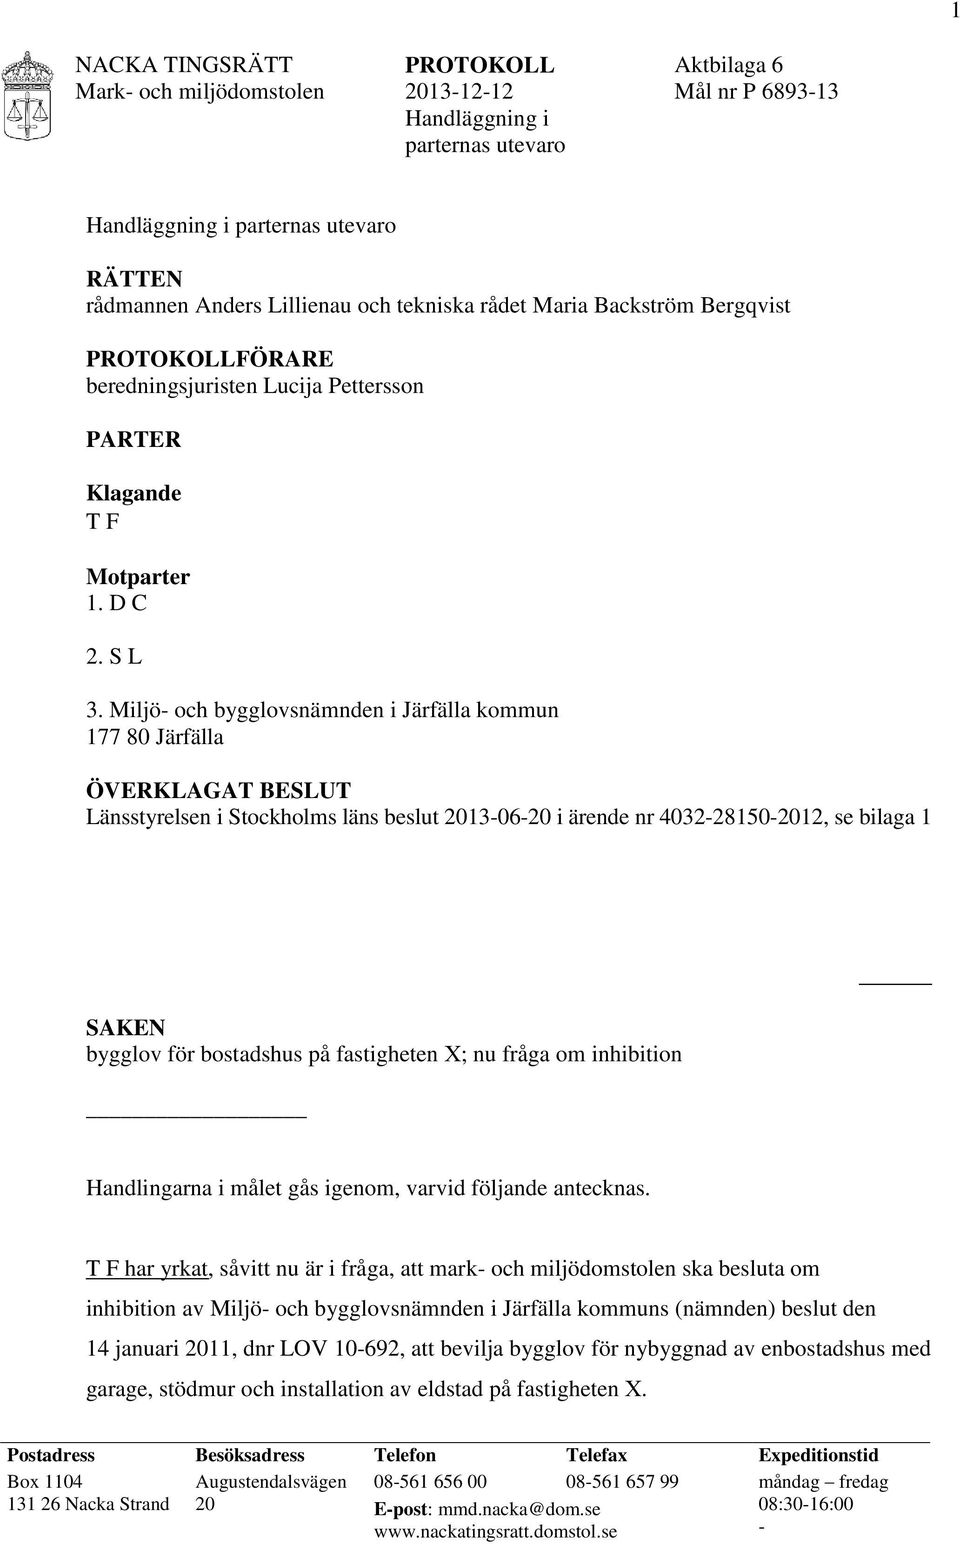 Miljö- och bygglovsnämnden i Järfälla kommun 177 80 Järfälla ÖVERKLAGAT BESLUT Länsstyrelsen i Stockholms läns beslut 2013-06-20 i ärende nr 4032-28150-2012, se bilaga 1 SAKEN bygglov för bostadshus